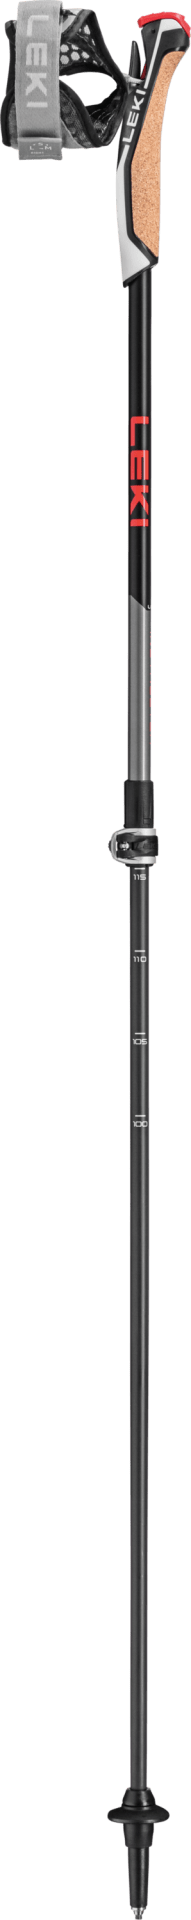 Aimant anti-gliss avec levier - 43mm - noir - by-pixcl